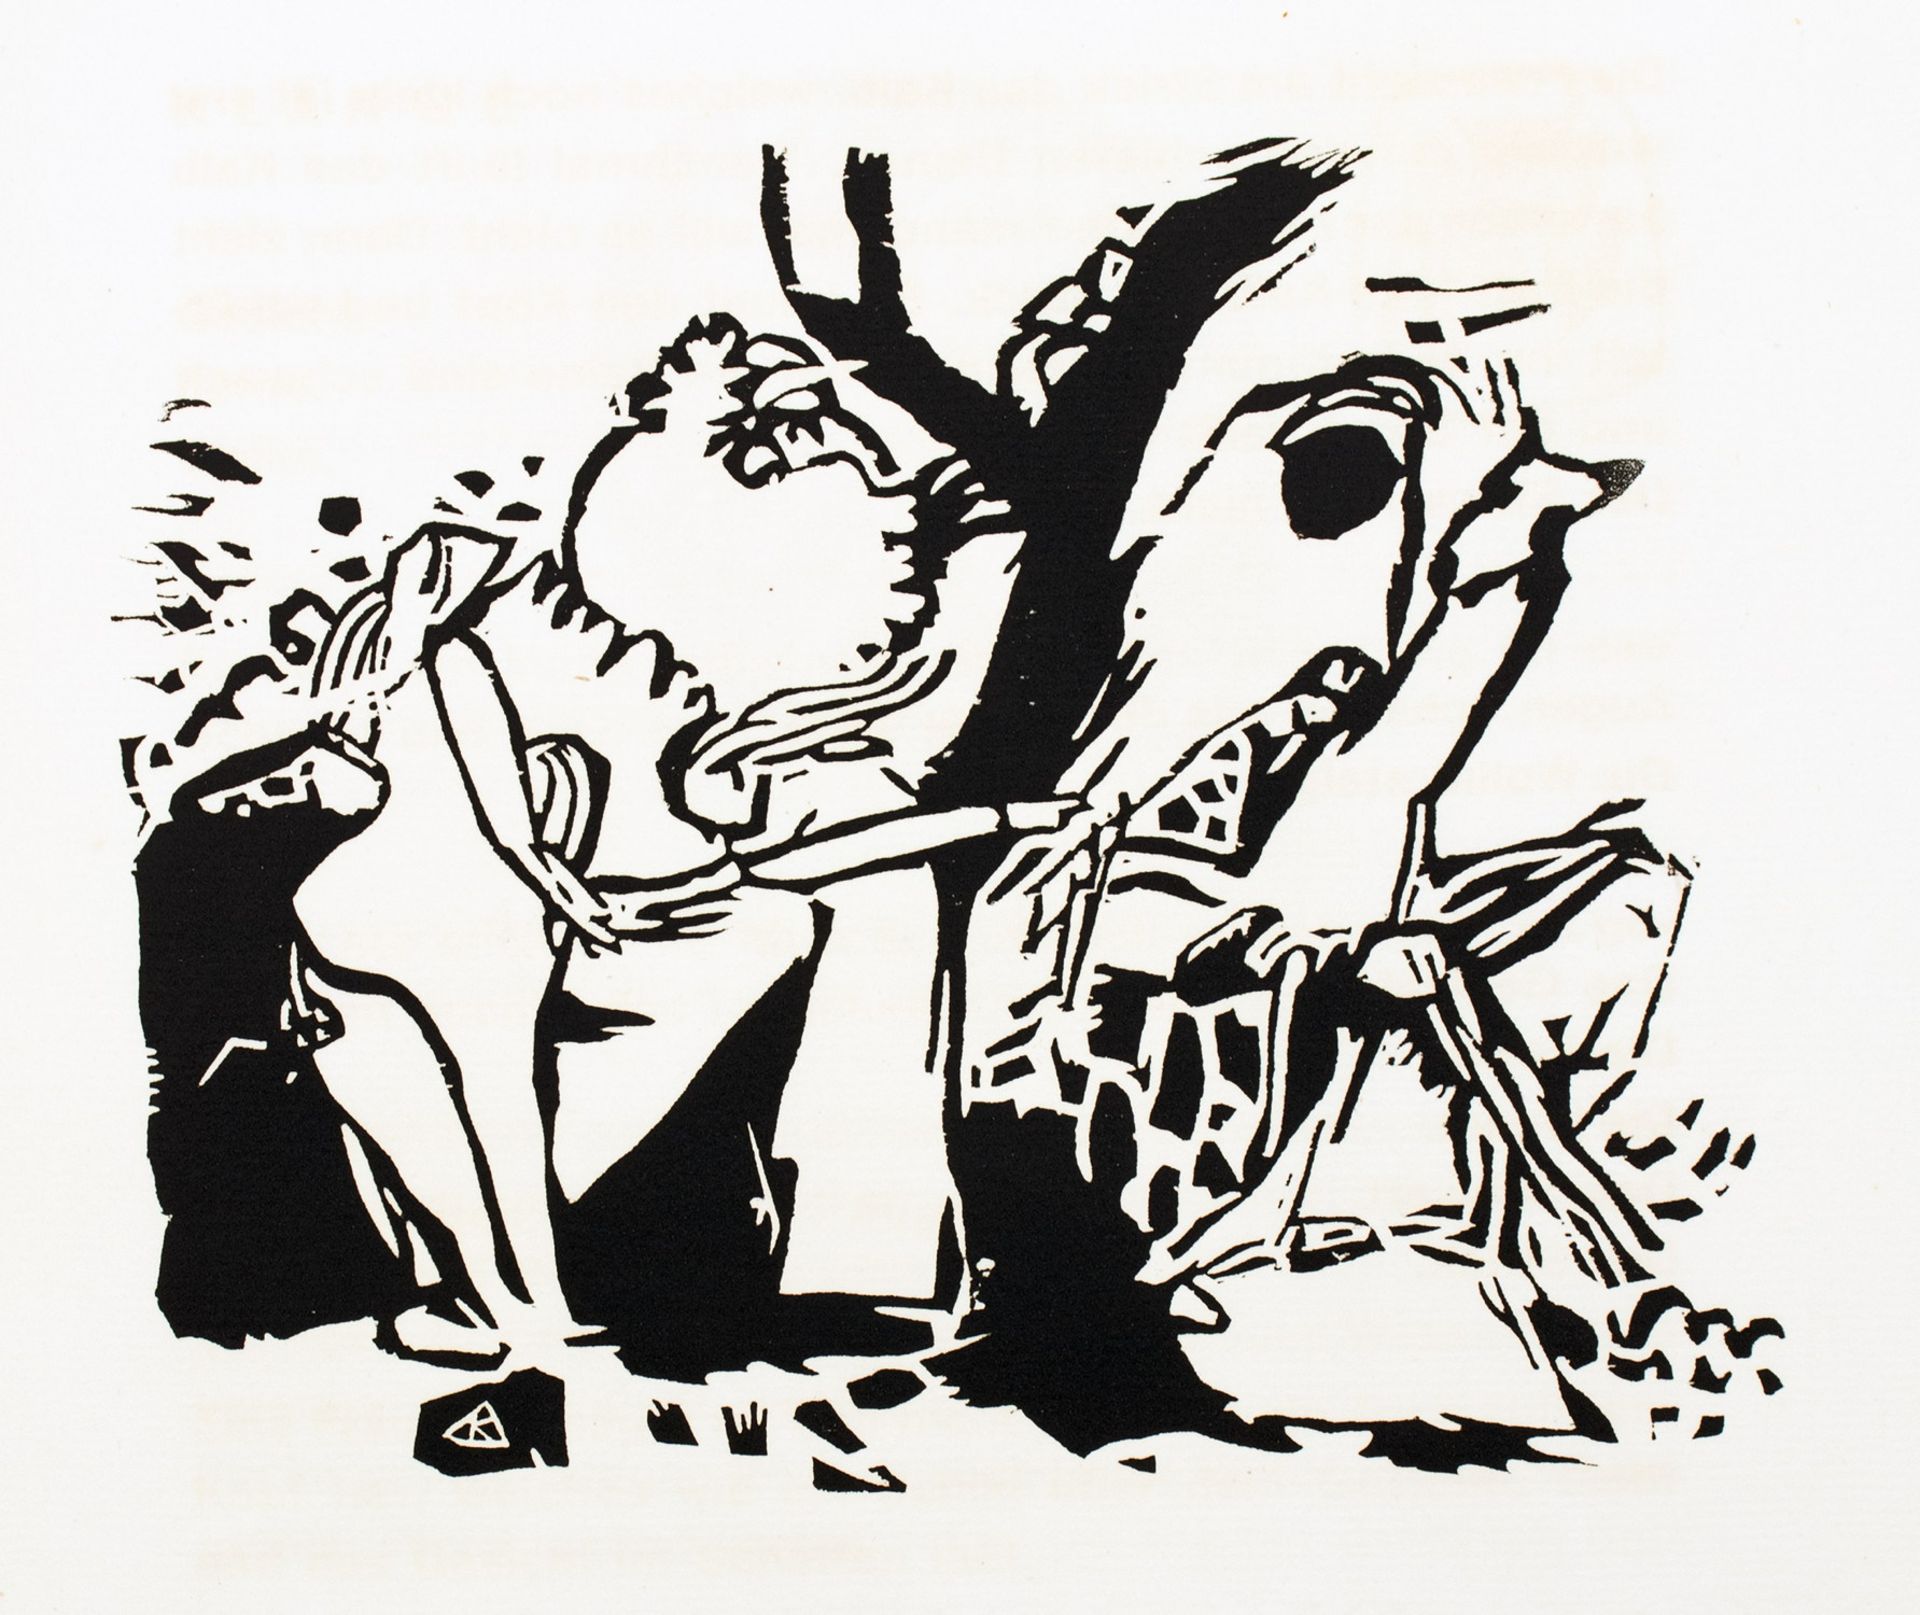 [Wassily] Kandinsky. Klänge - Bild 6 aus 11